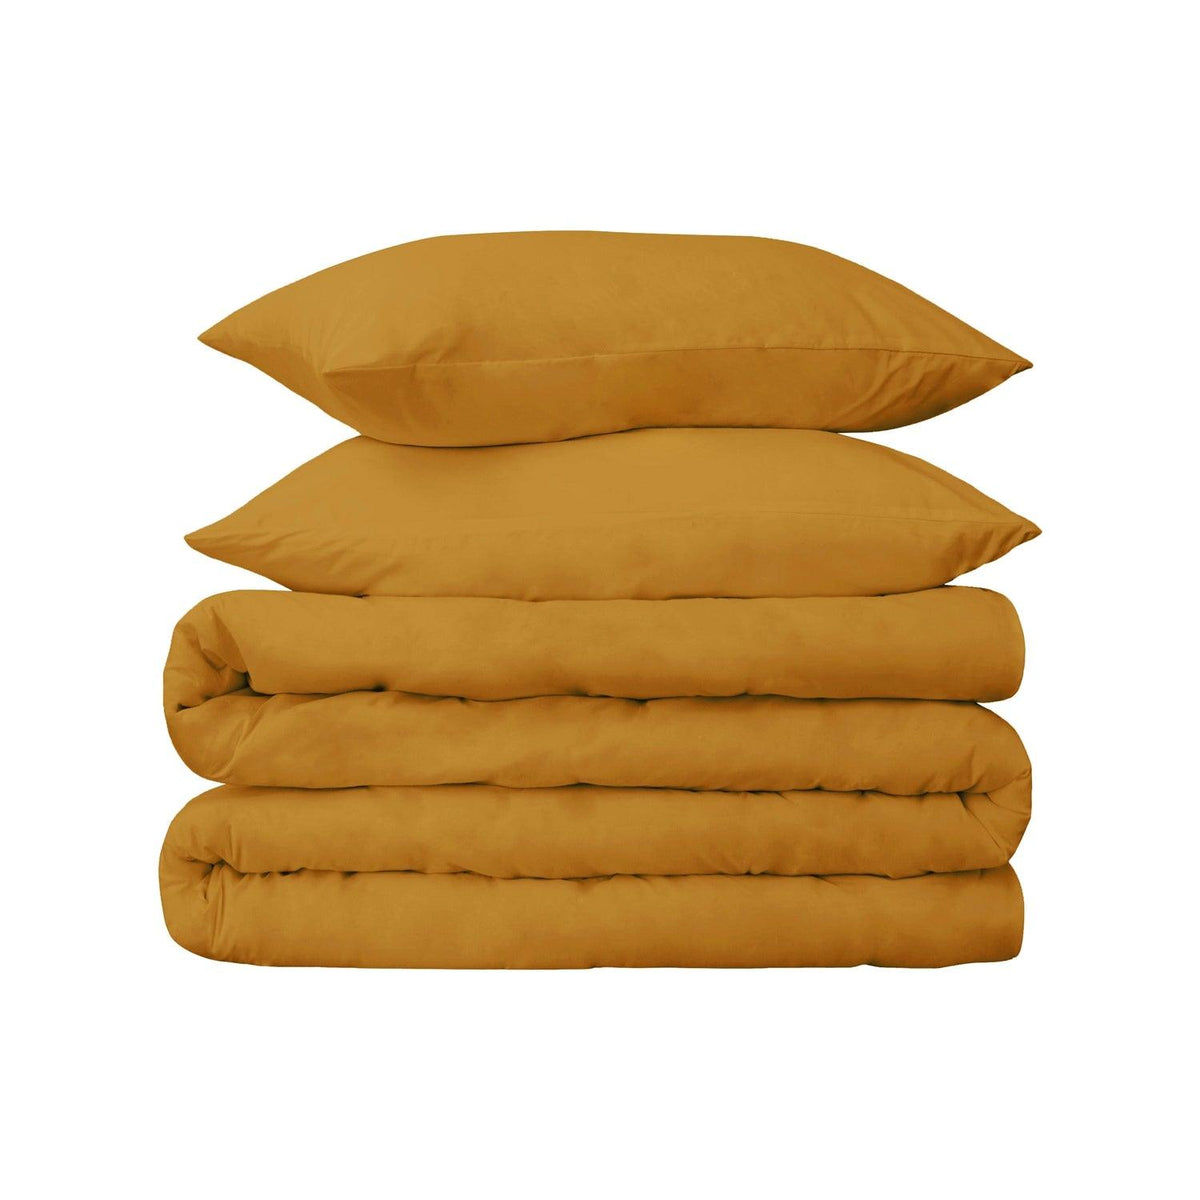  Superior Premium 650 Thread Count Egyptian Cotton Solid Duvet Cover Set - Maple Sugar